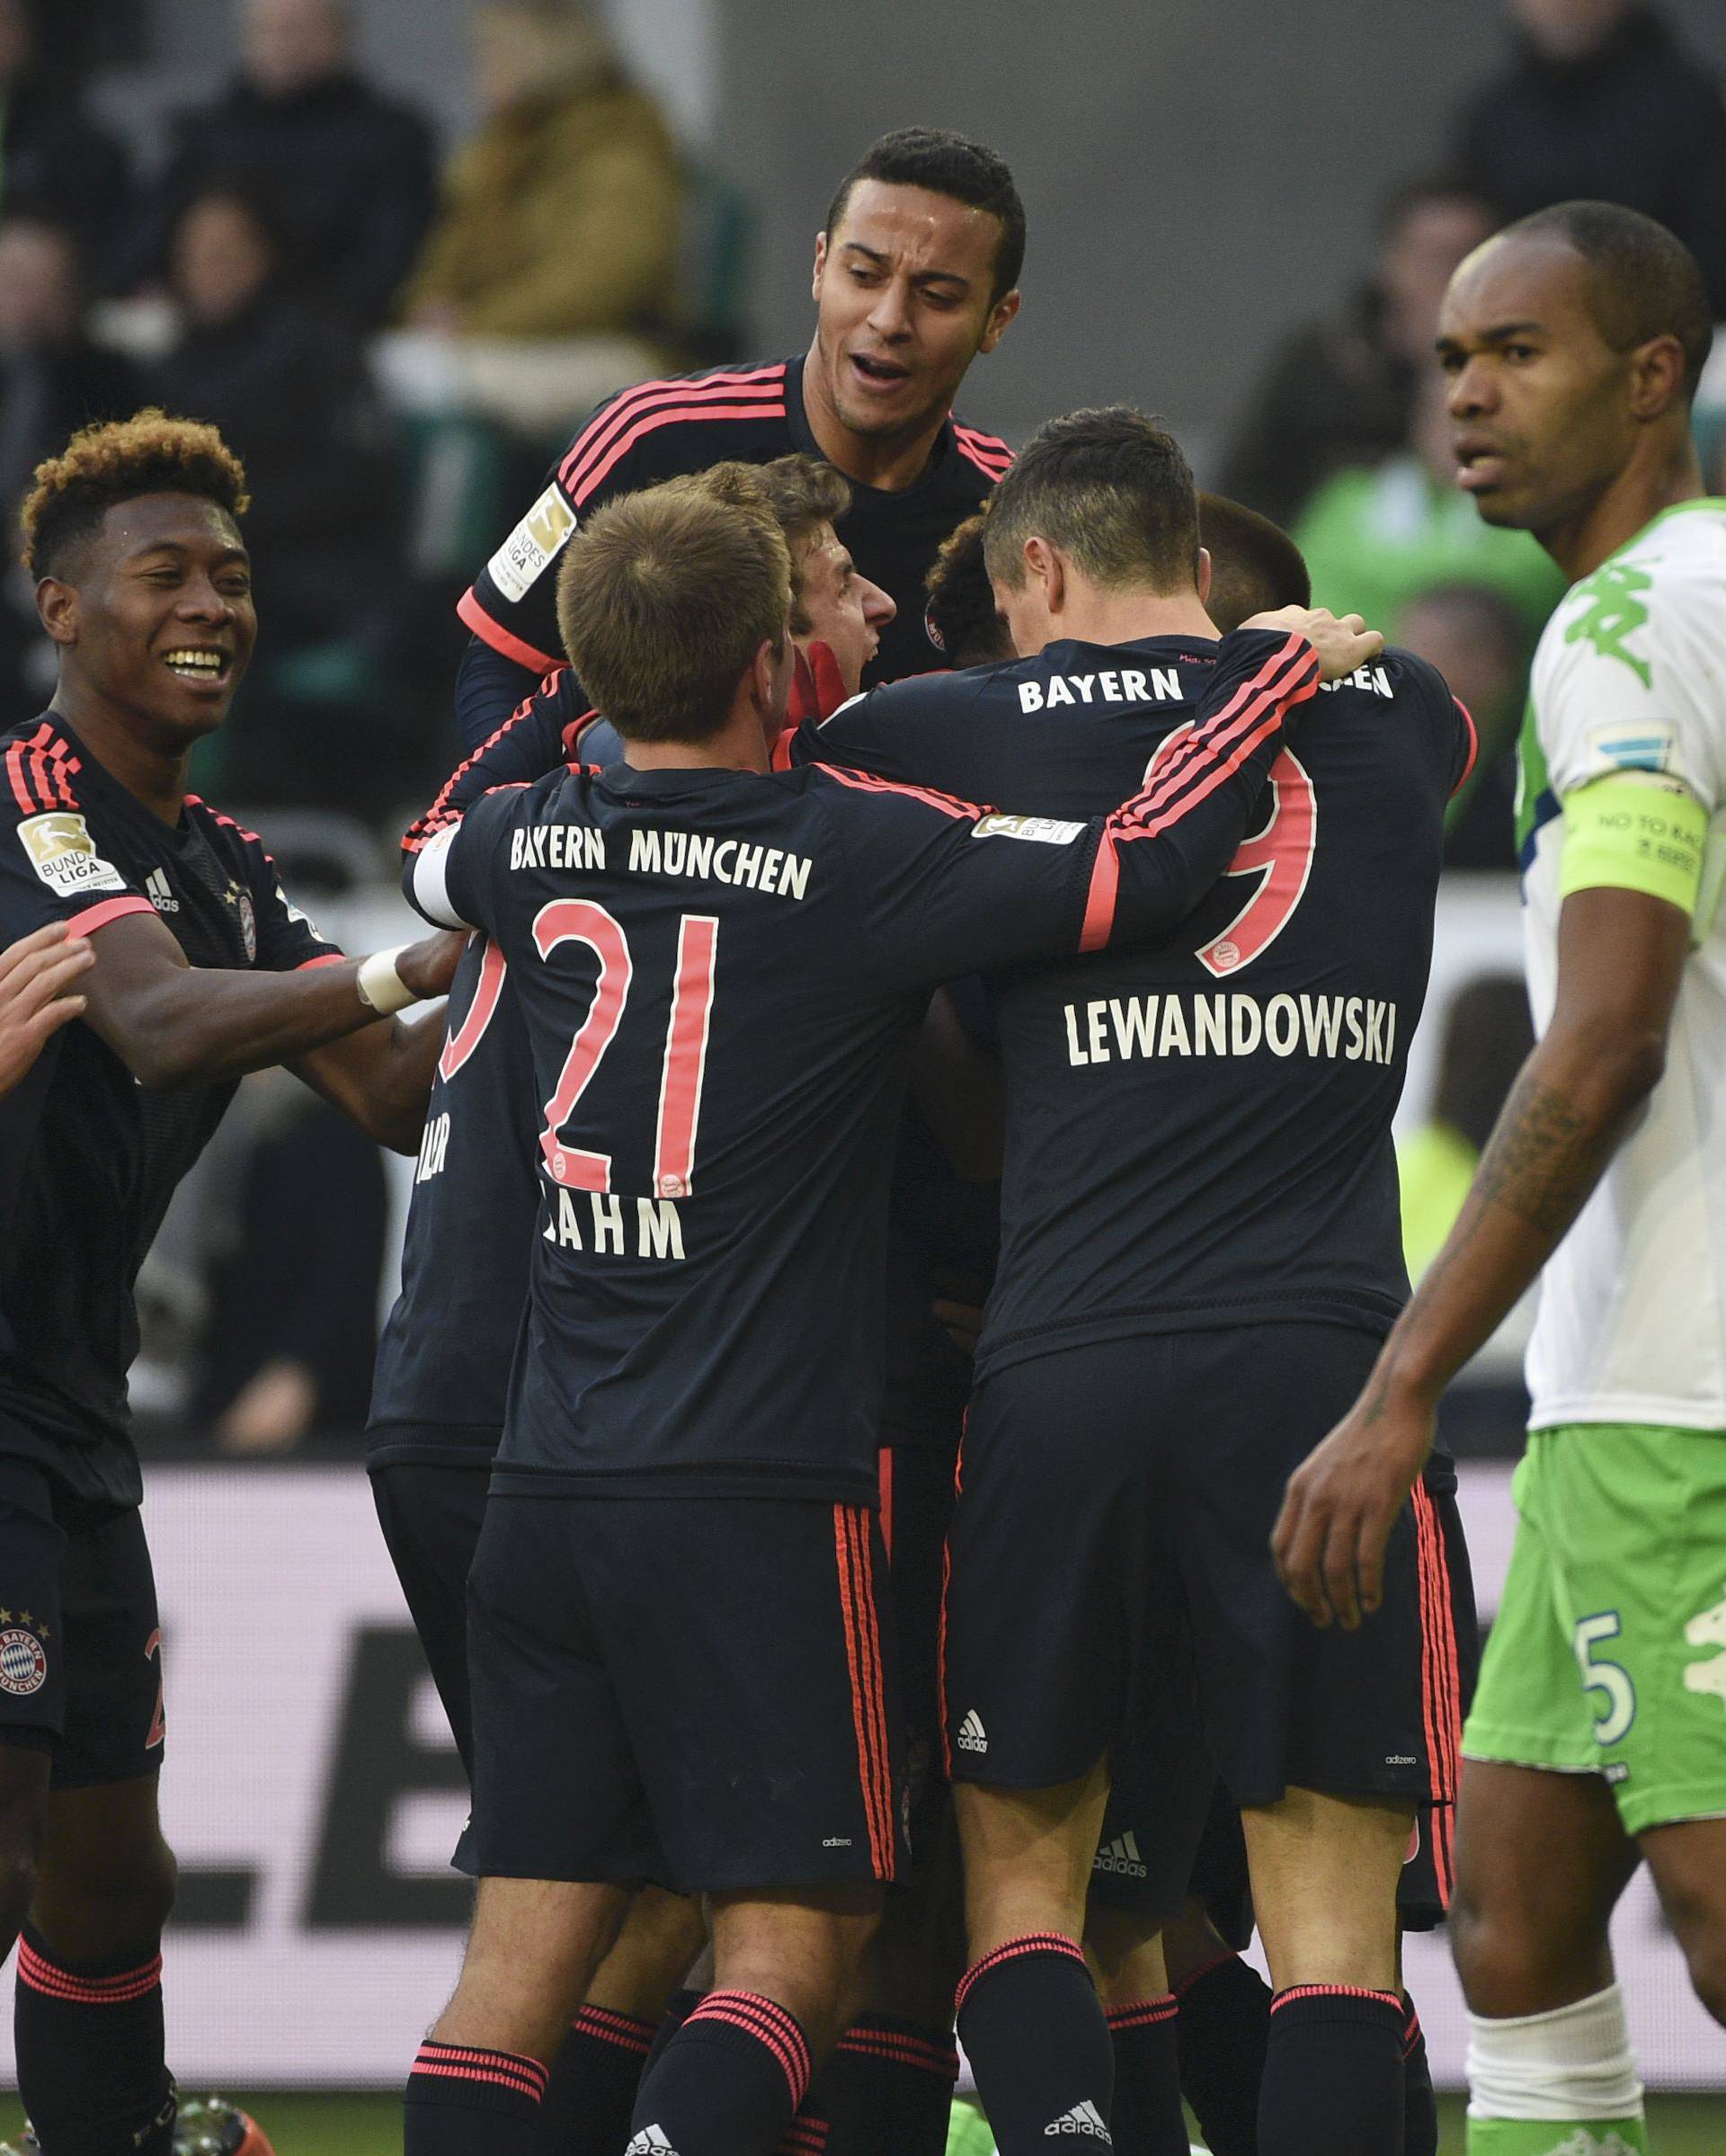 Lewandowski opet poentirao, Bayern je svladao Wolfsburg